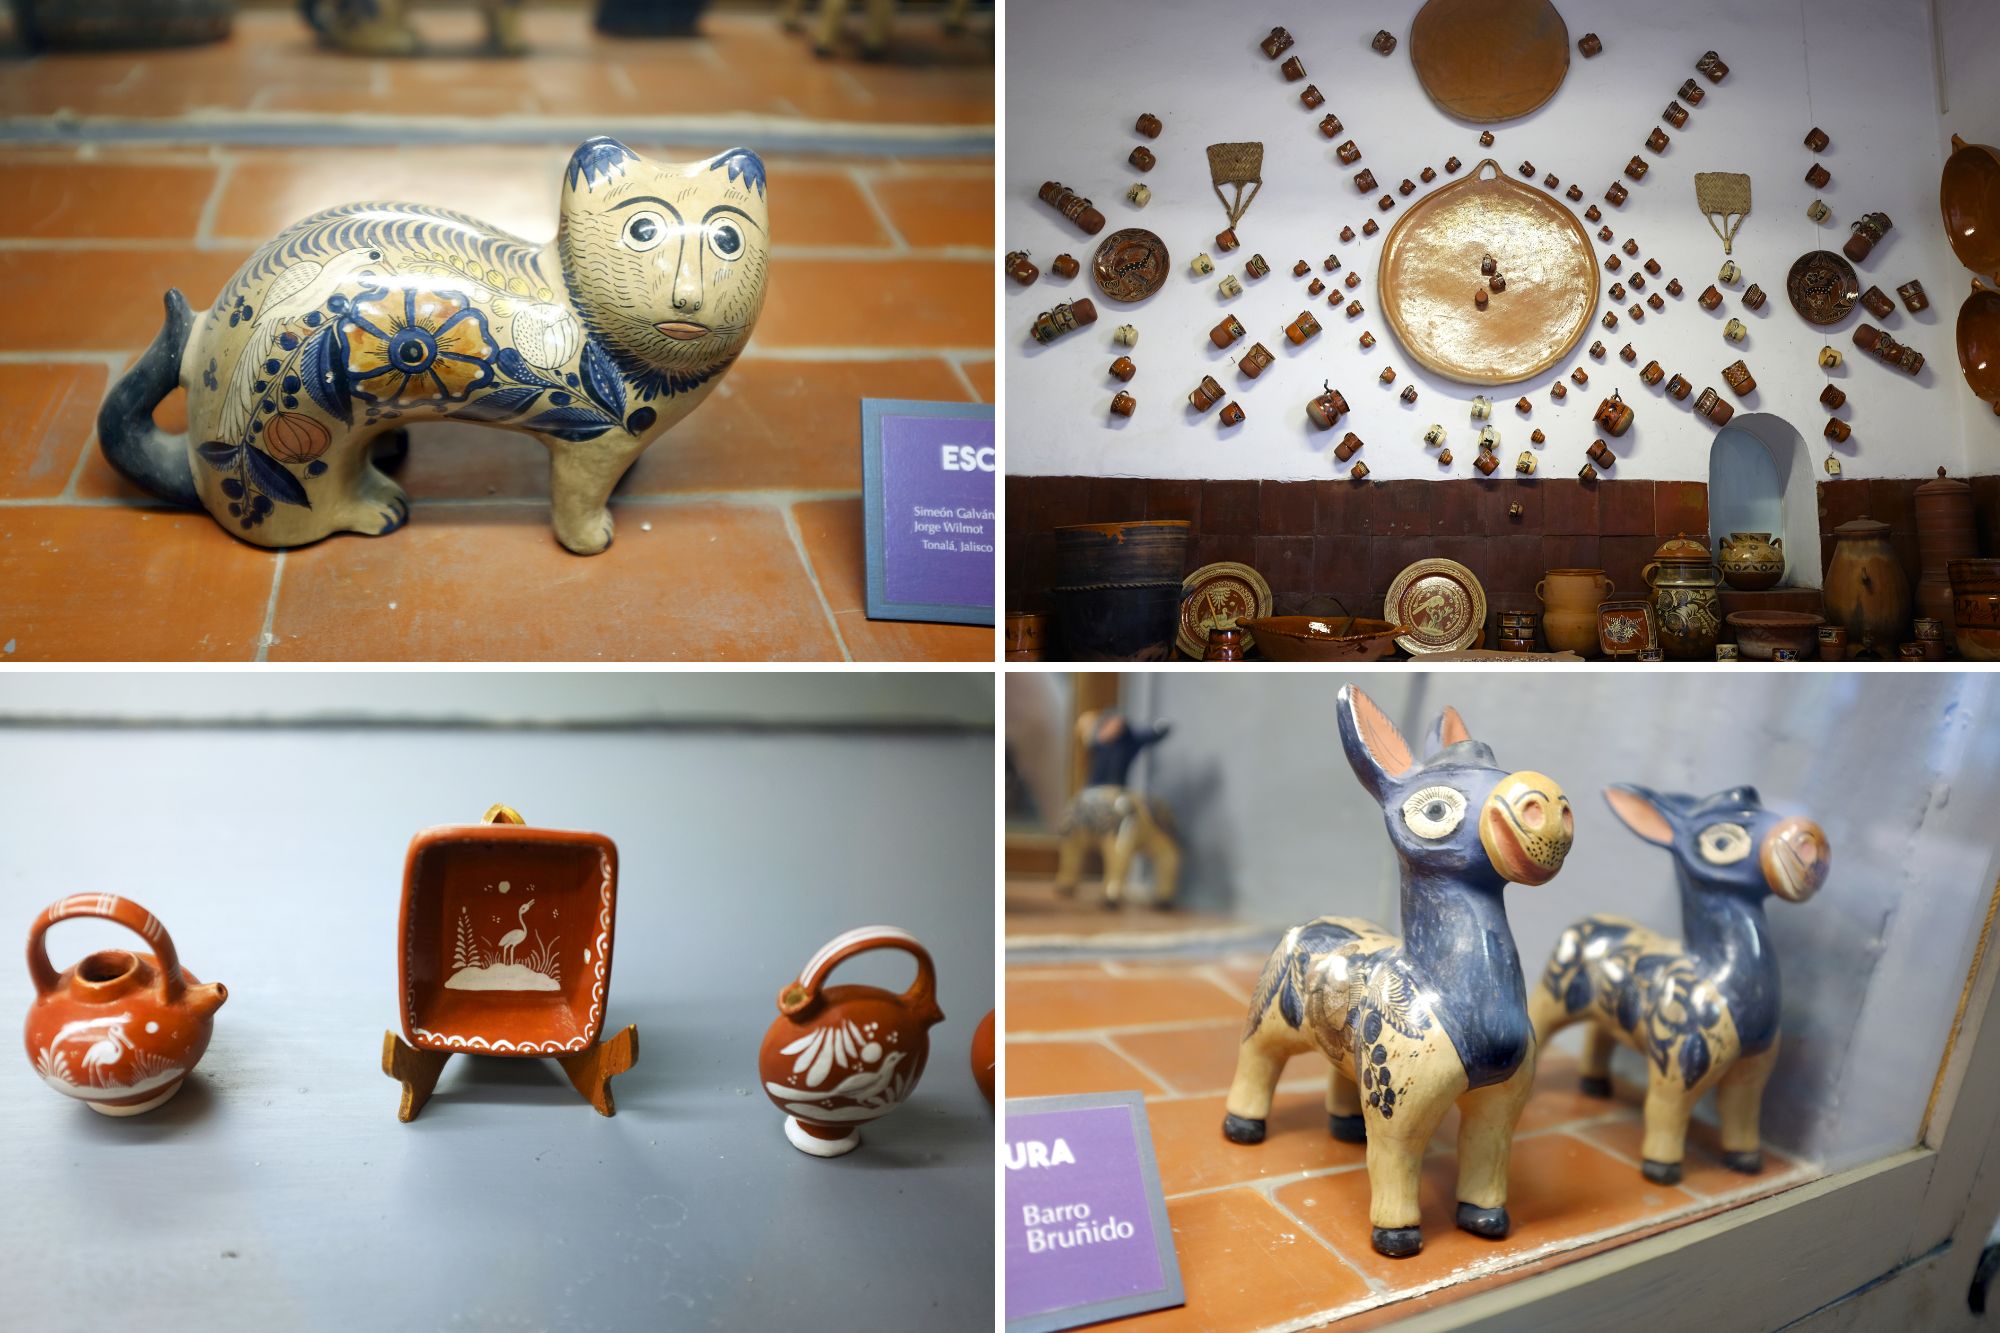 Collage of ceramics from the Ceramics museum in Tlaquepaque